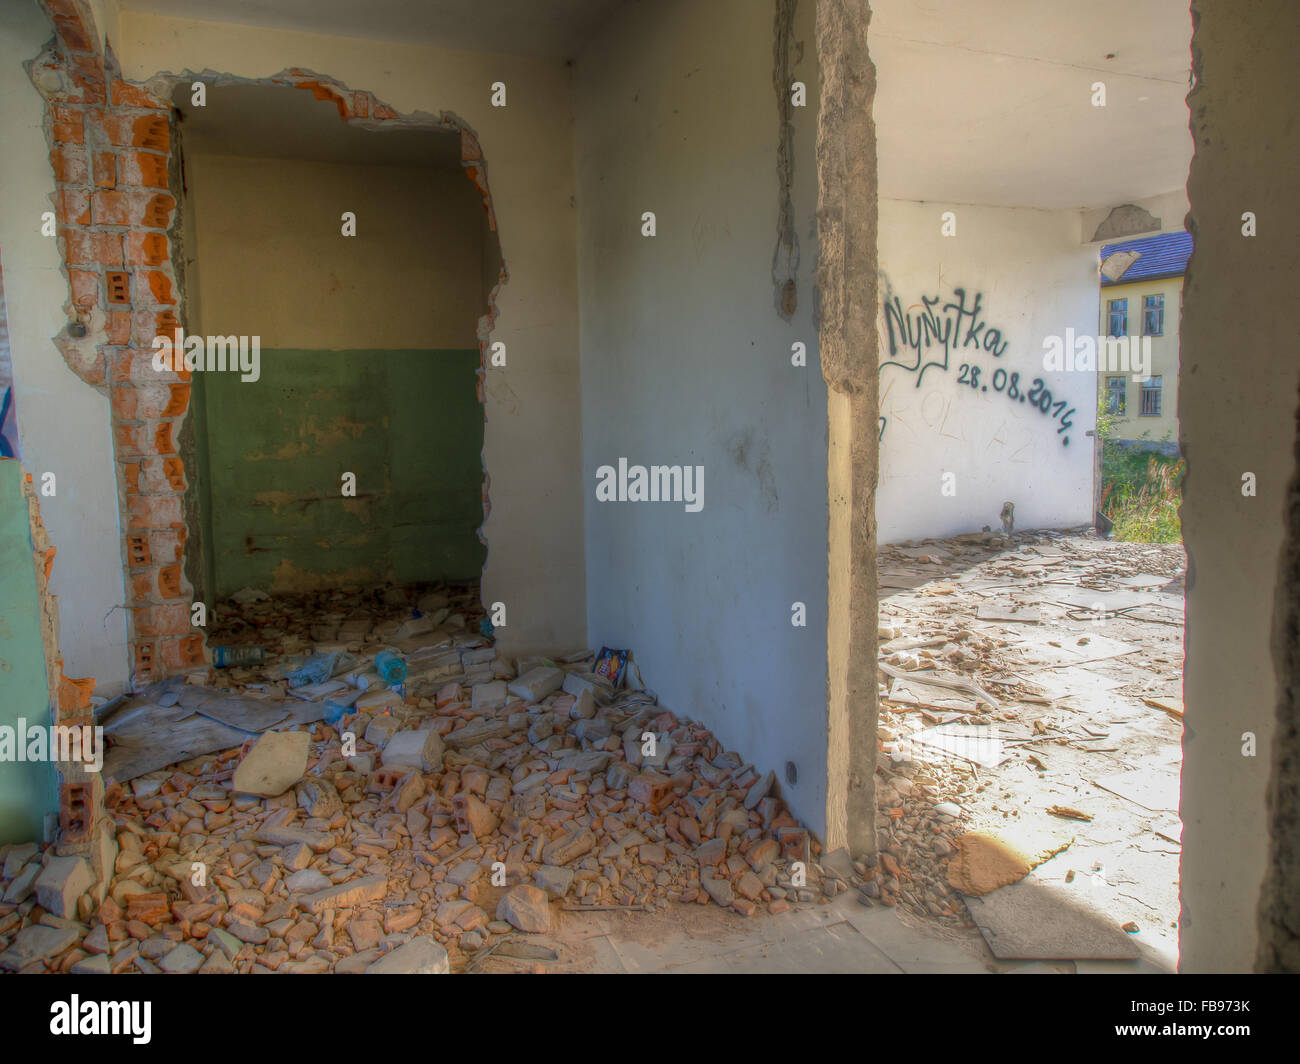 Klomino, Polonia - 28 agosto 2015: abbandonata città sovietica, distrutto il blocco di appartamenti dove militare sovietica utilizzato per vissuto Foto Stock